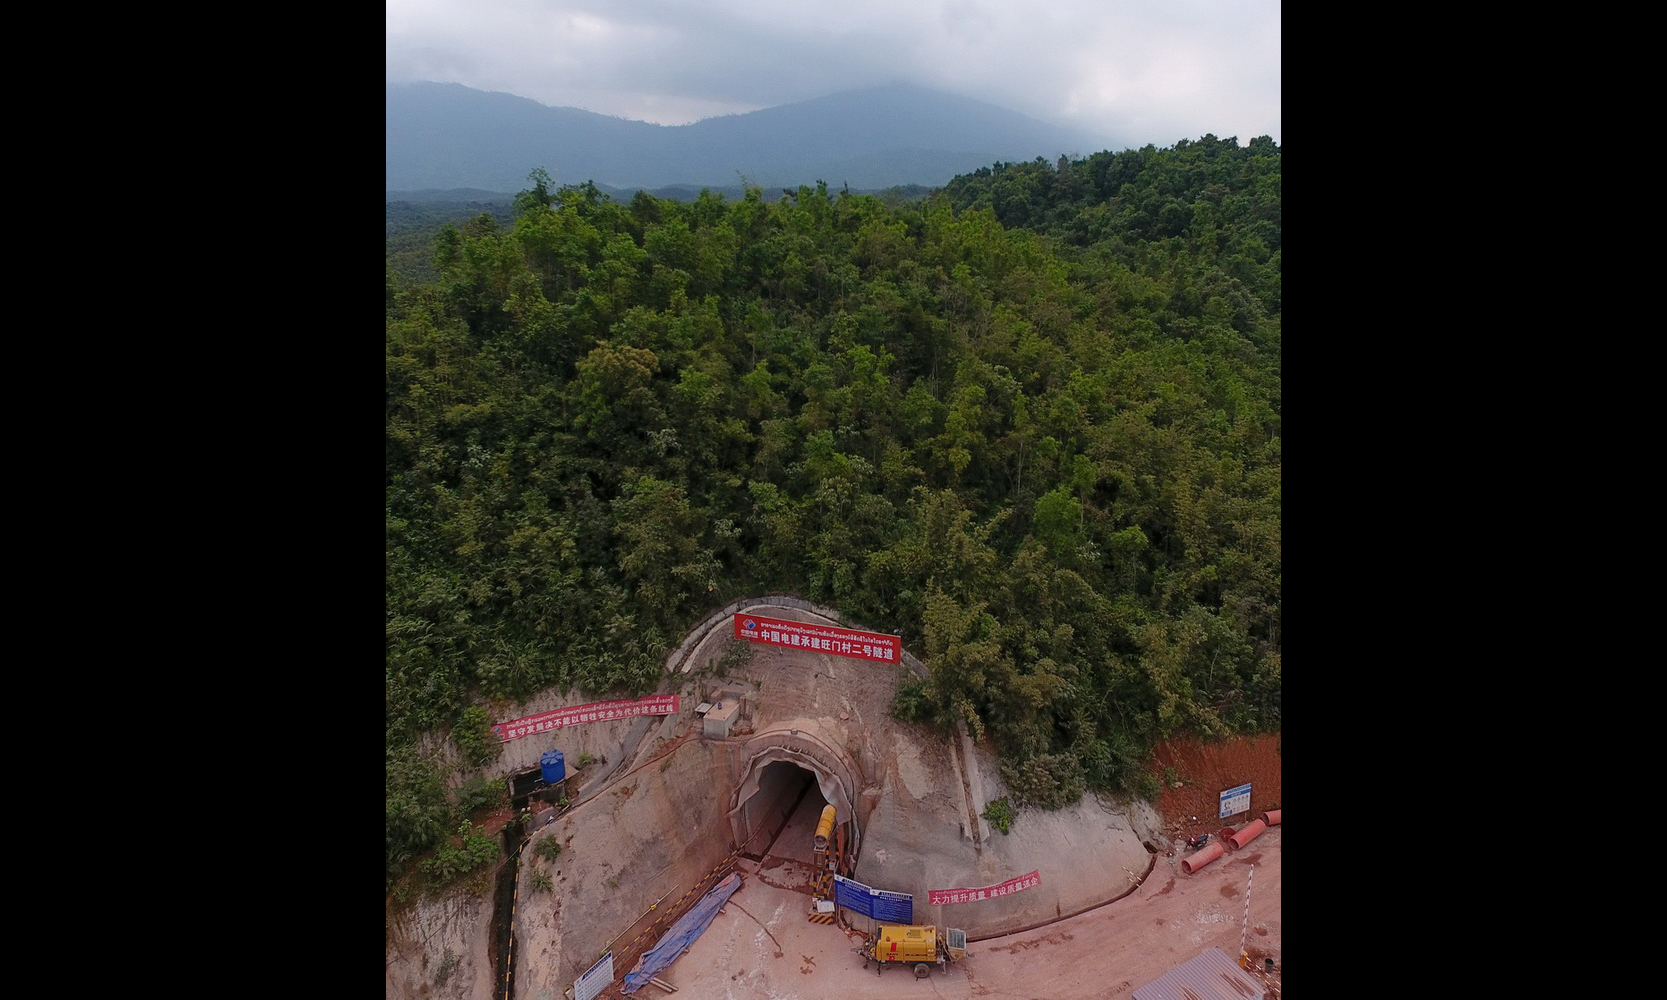 这是12月13日在老挝万象省拍摄的旺门村二号隧道所在地景象。这是12月13日在老挝万象省拍摄的旺门村二号隧道所在地景象。新华社发（刘艾伦摄）